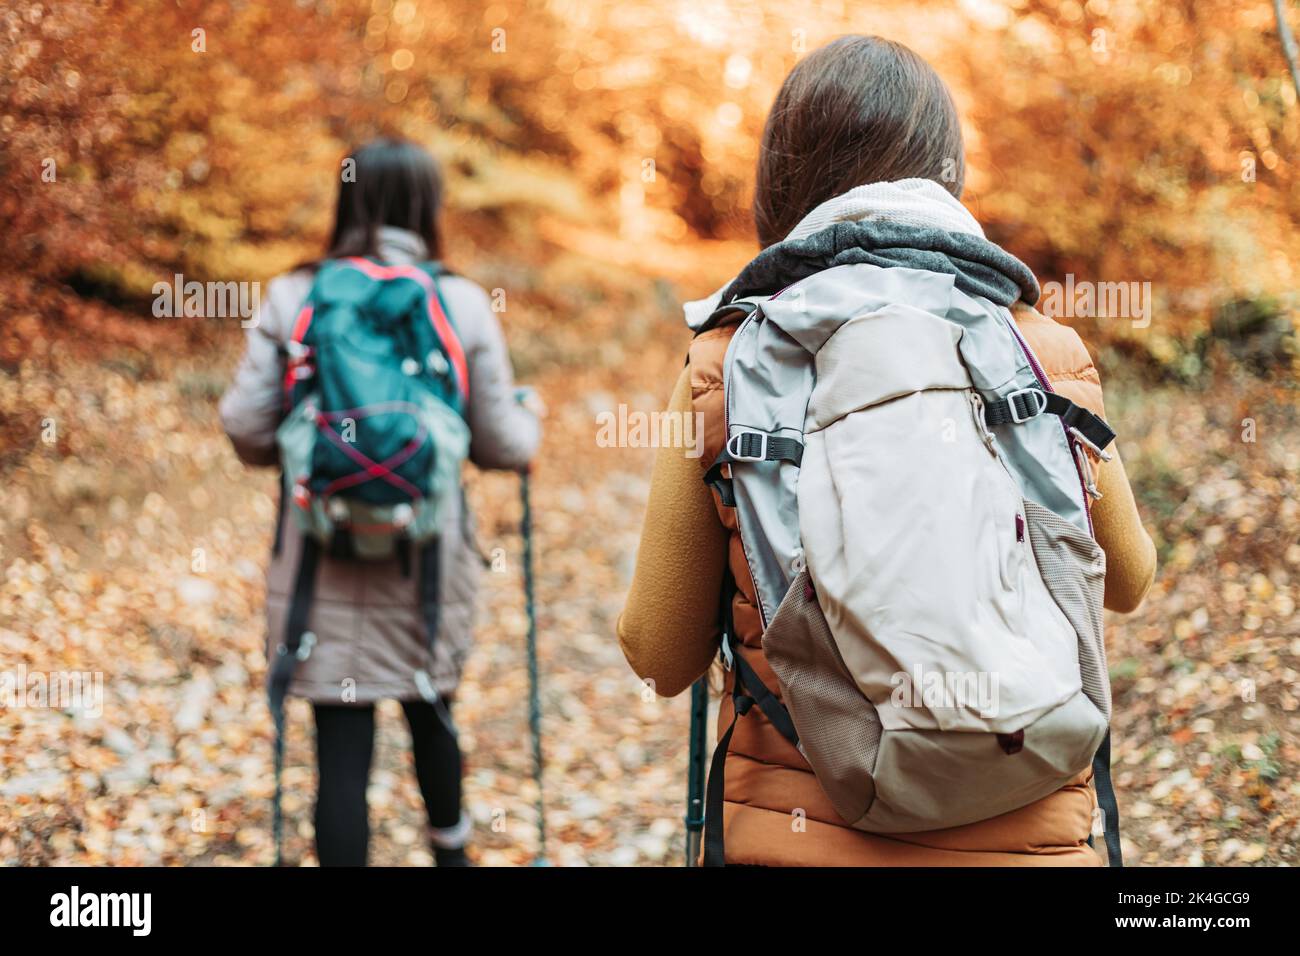 Dos niñas, excursionistas, caminando por el bosque de otoño Foto de stock